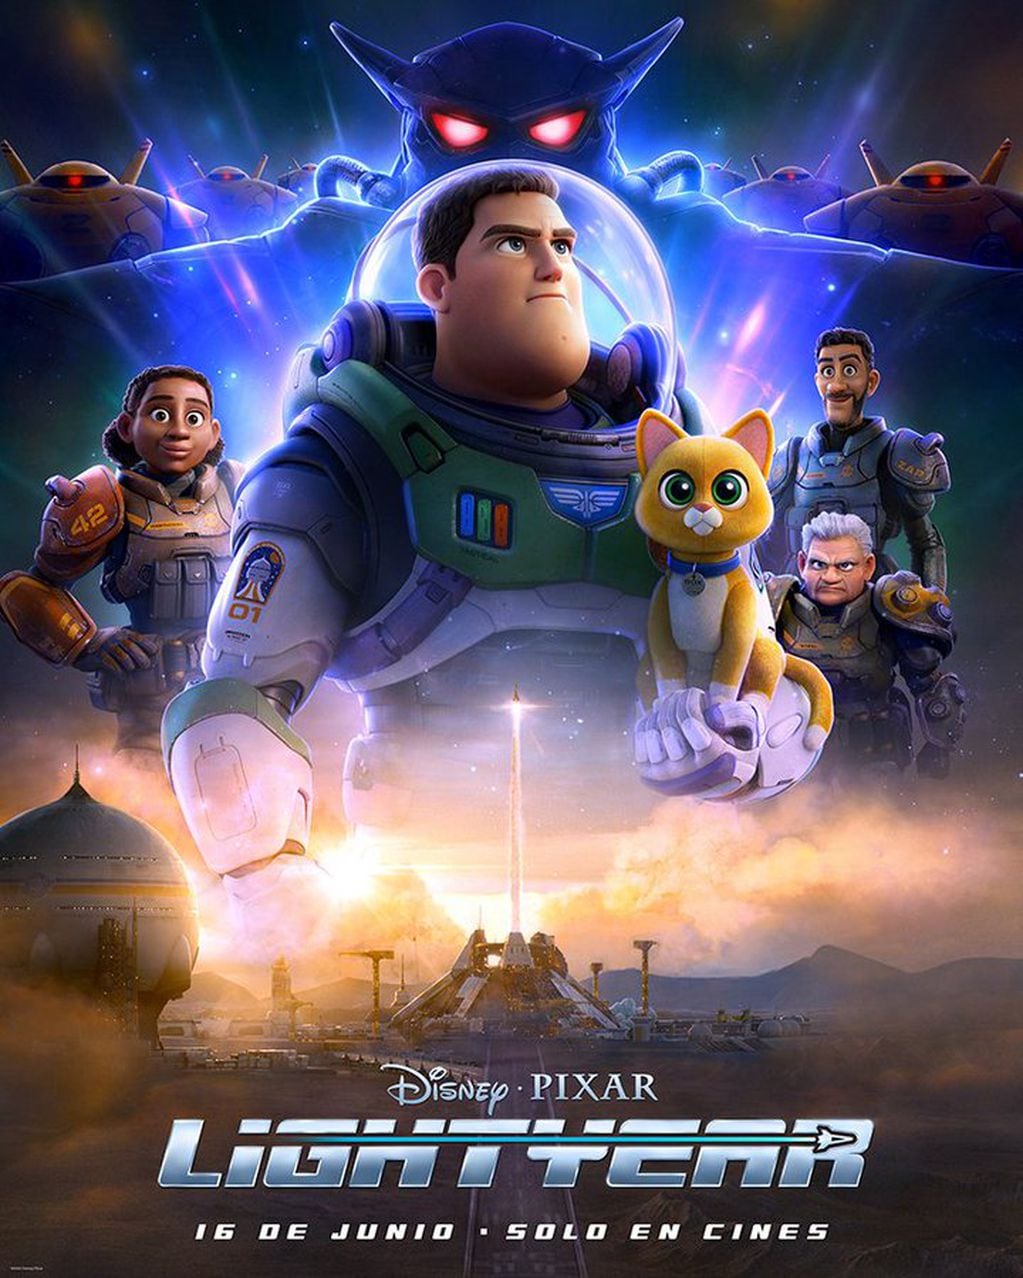 Pixar lanzó un nuevo trailer de Buzz Lightyear